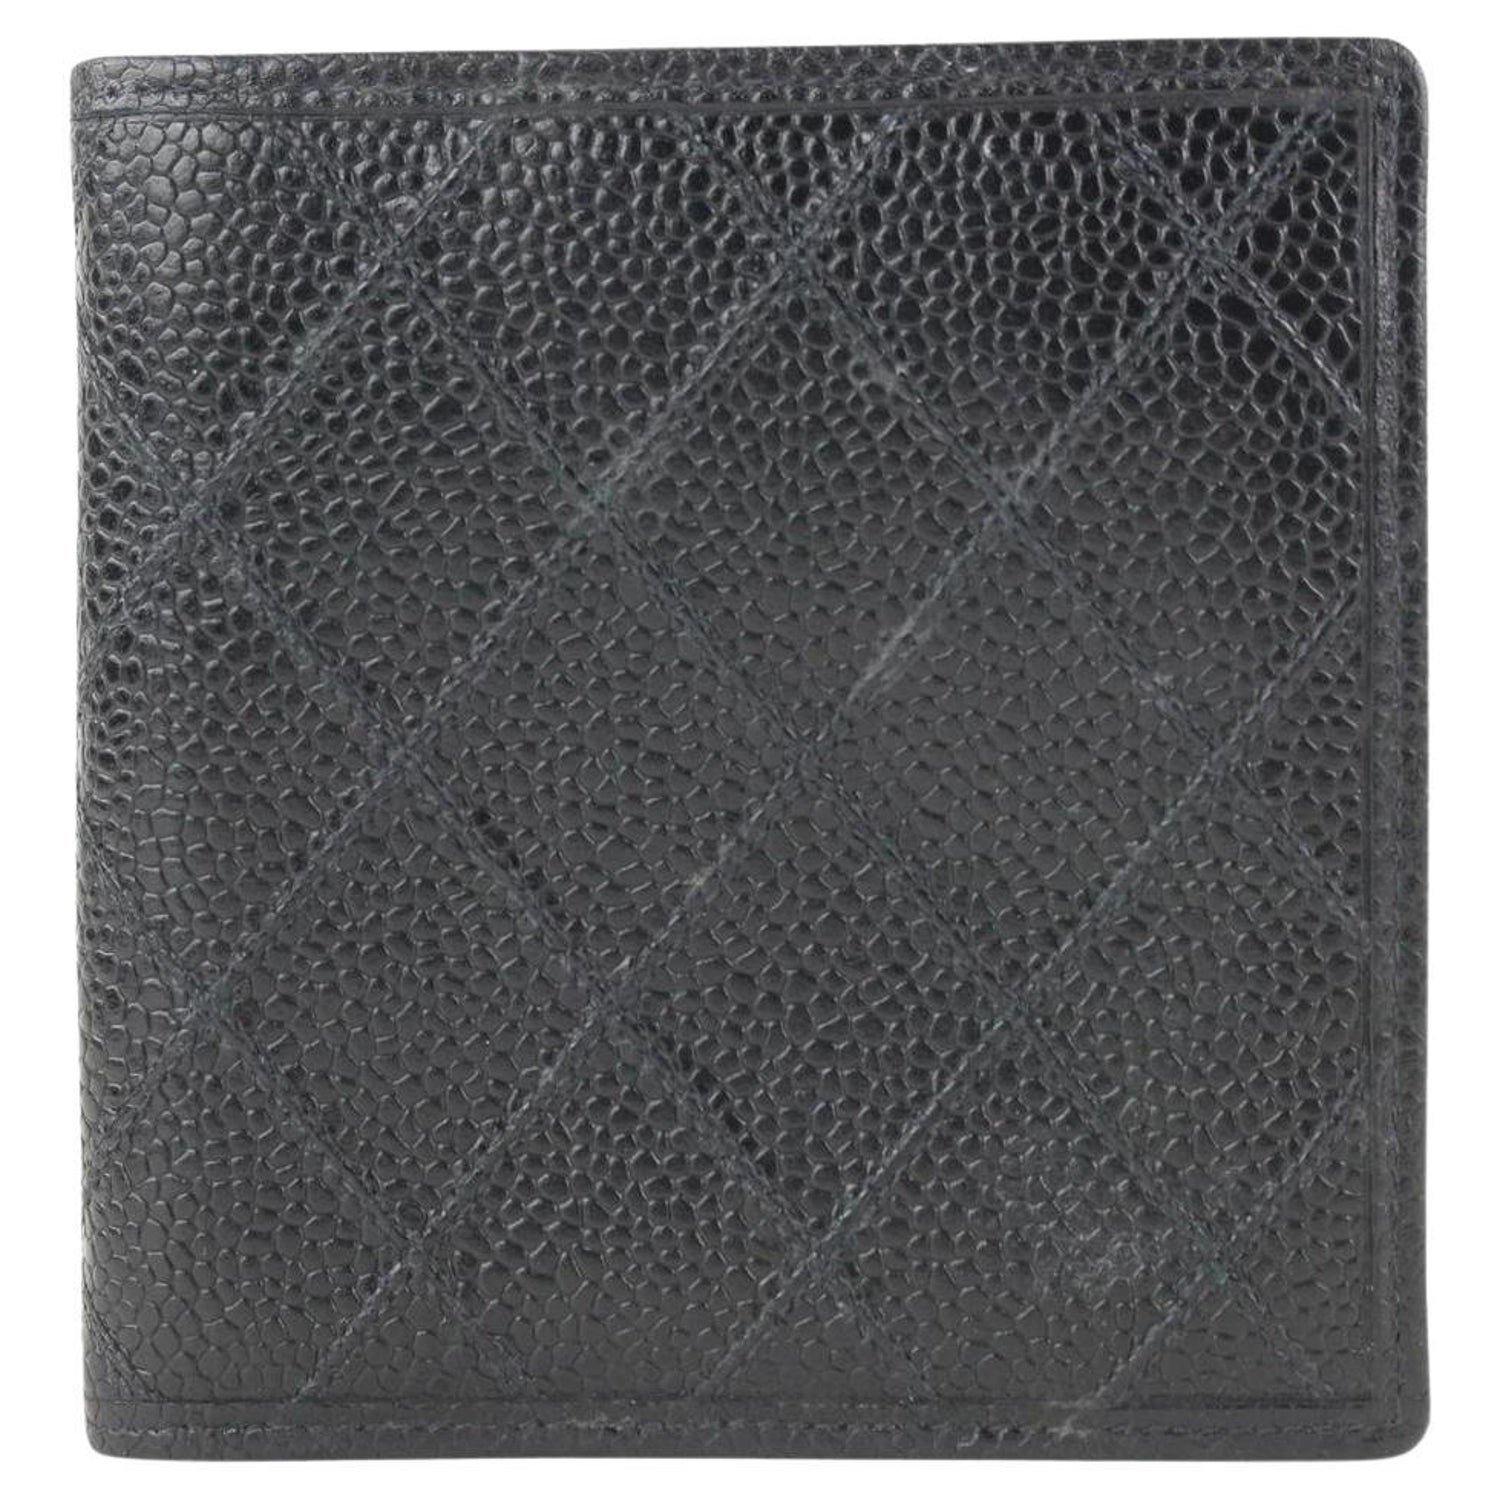 Chanel Wallet (Black Leather, Men's Pre-owned Designer Wallets